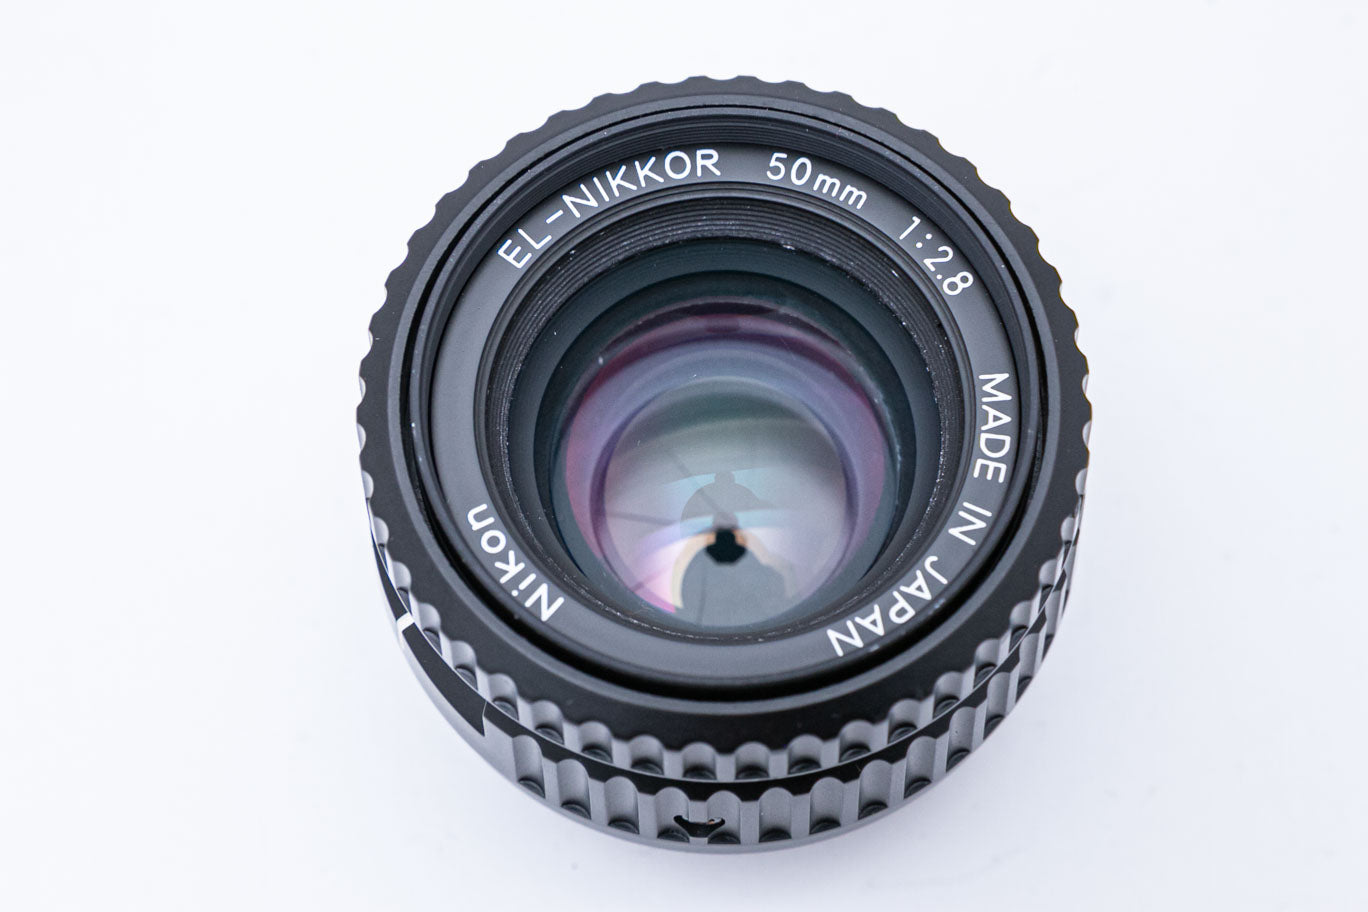 Nikon EL Nikkor 50mm F2.8 (引き伸ばし用) – ねりま中古カメラきつね堂